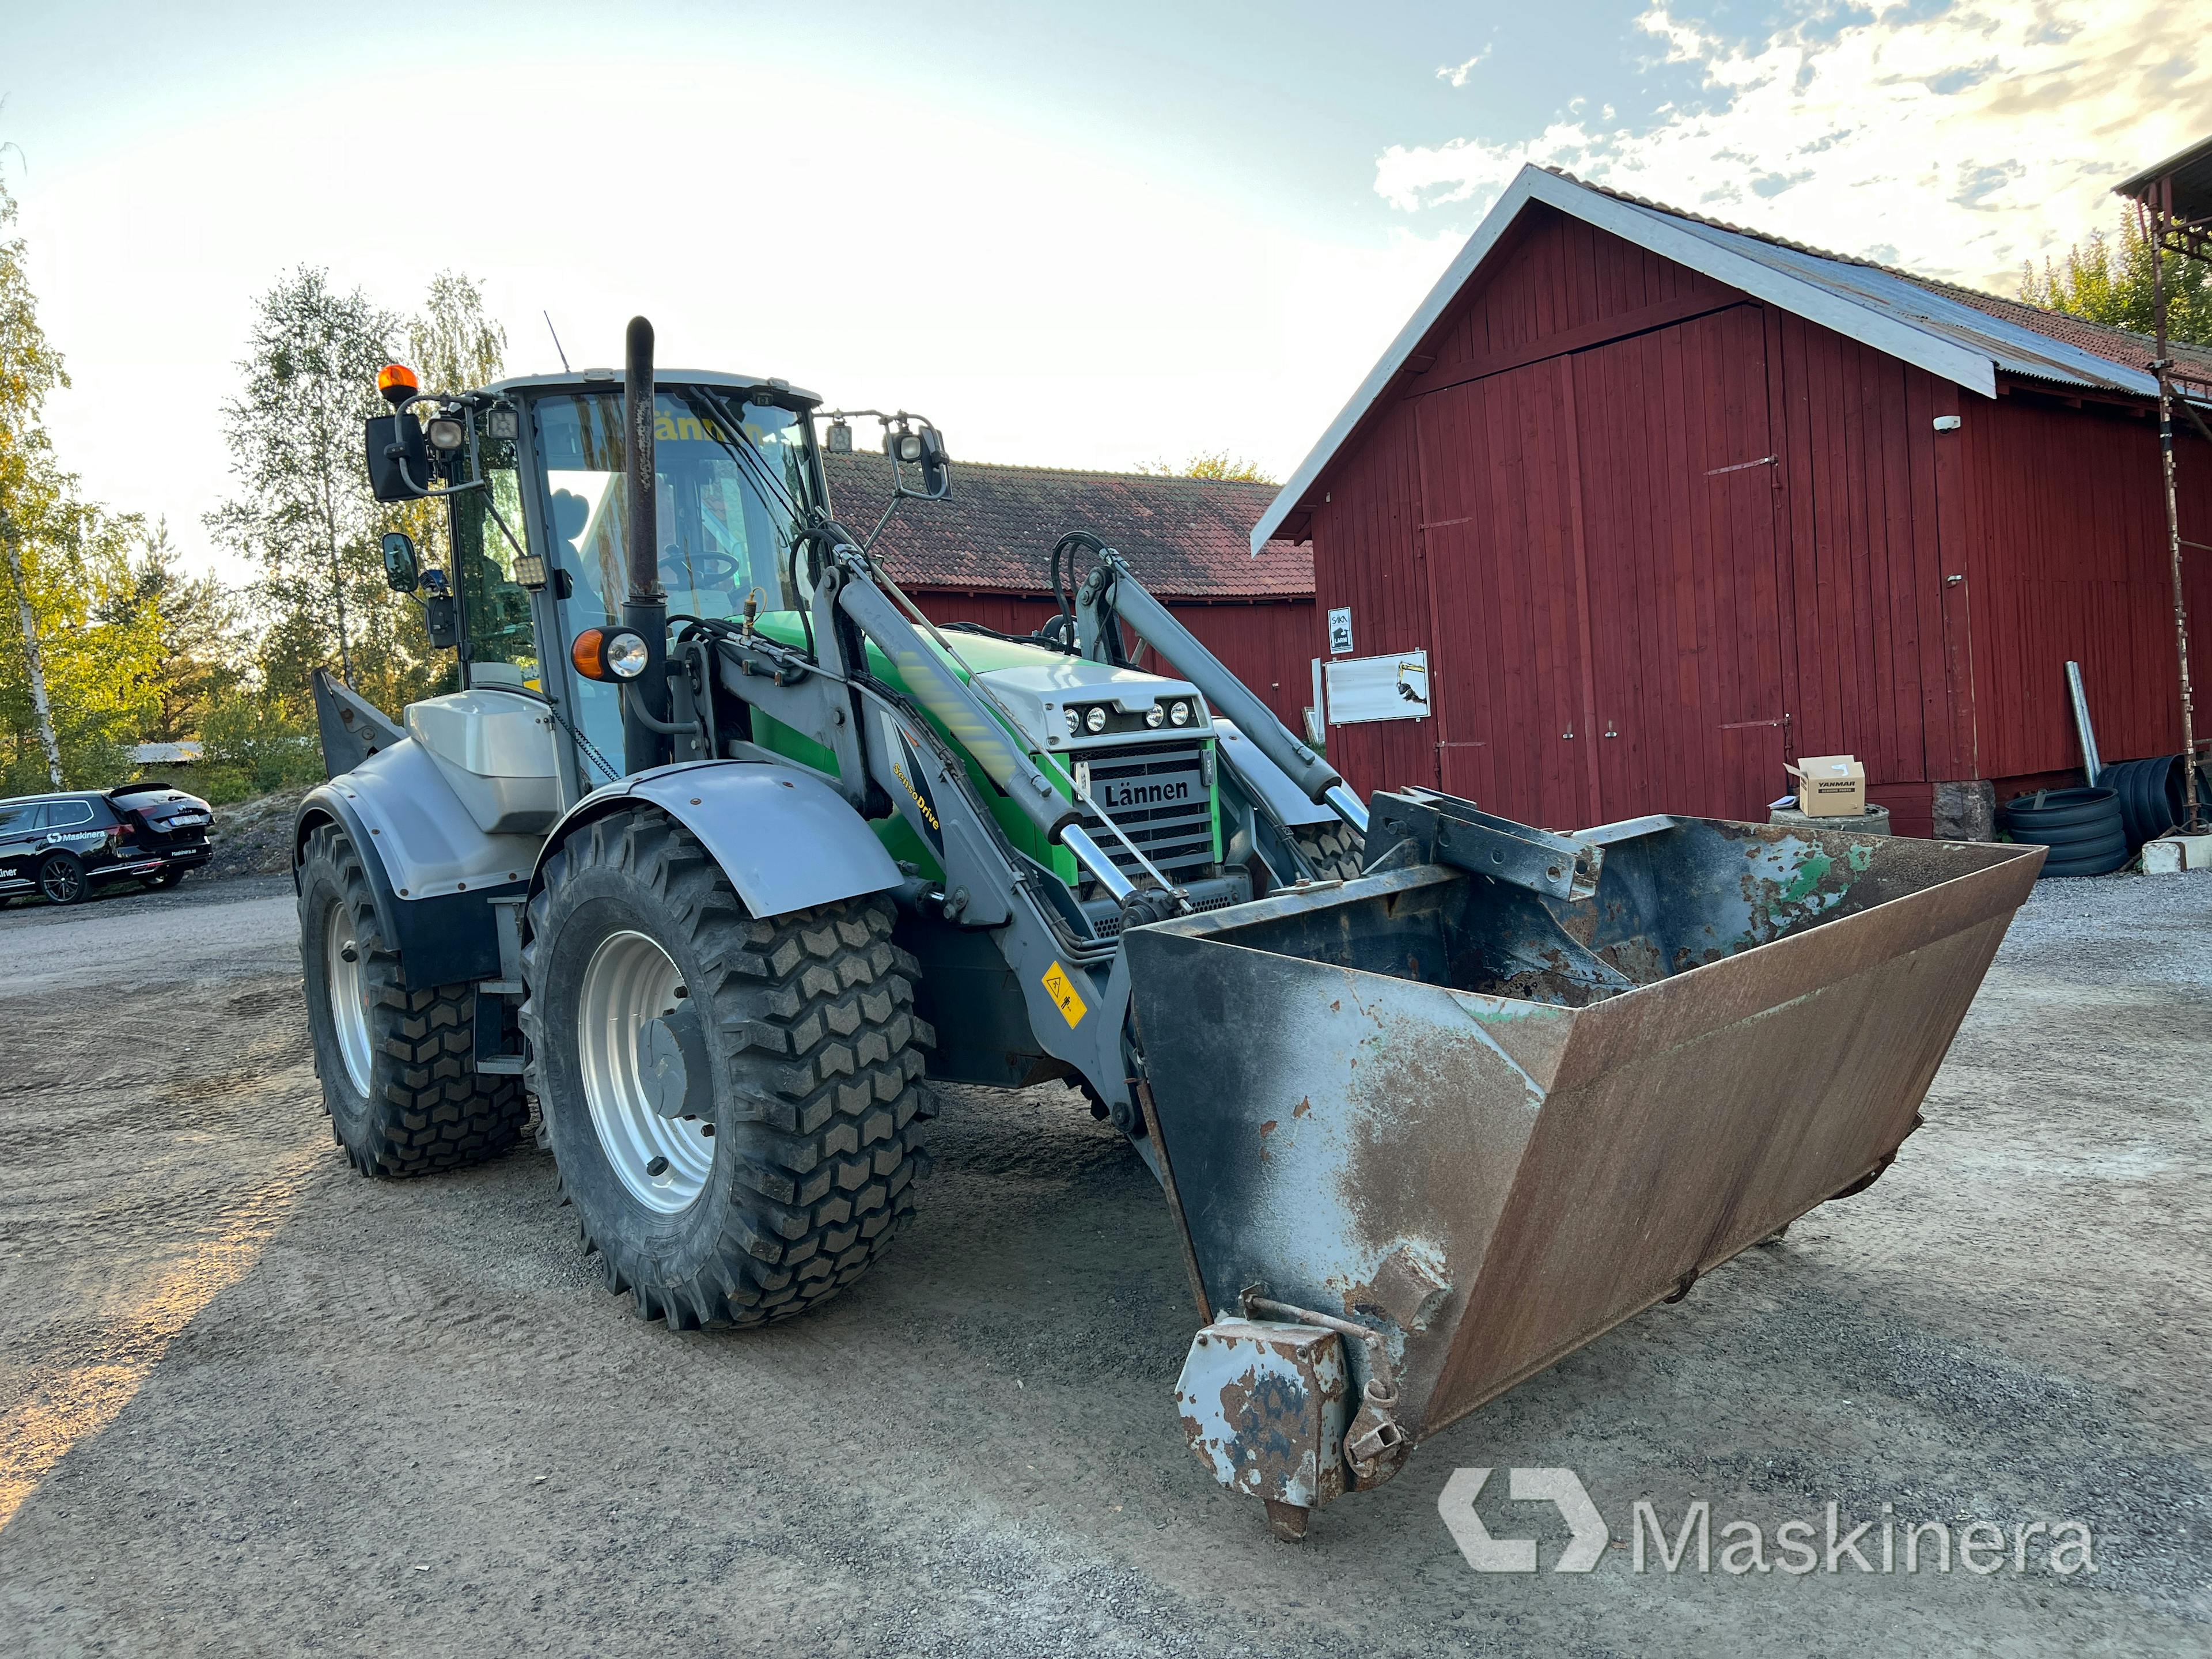 Traktorgrävare Lännen 8600 G med 7 redskap + sandspridarvagn